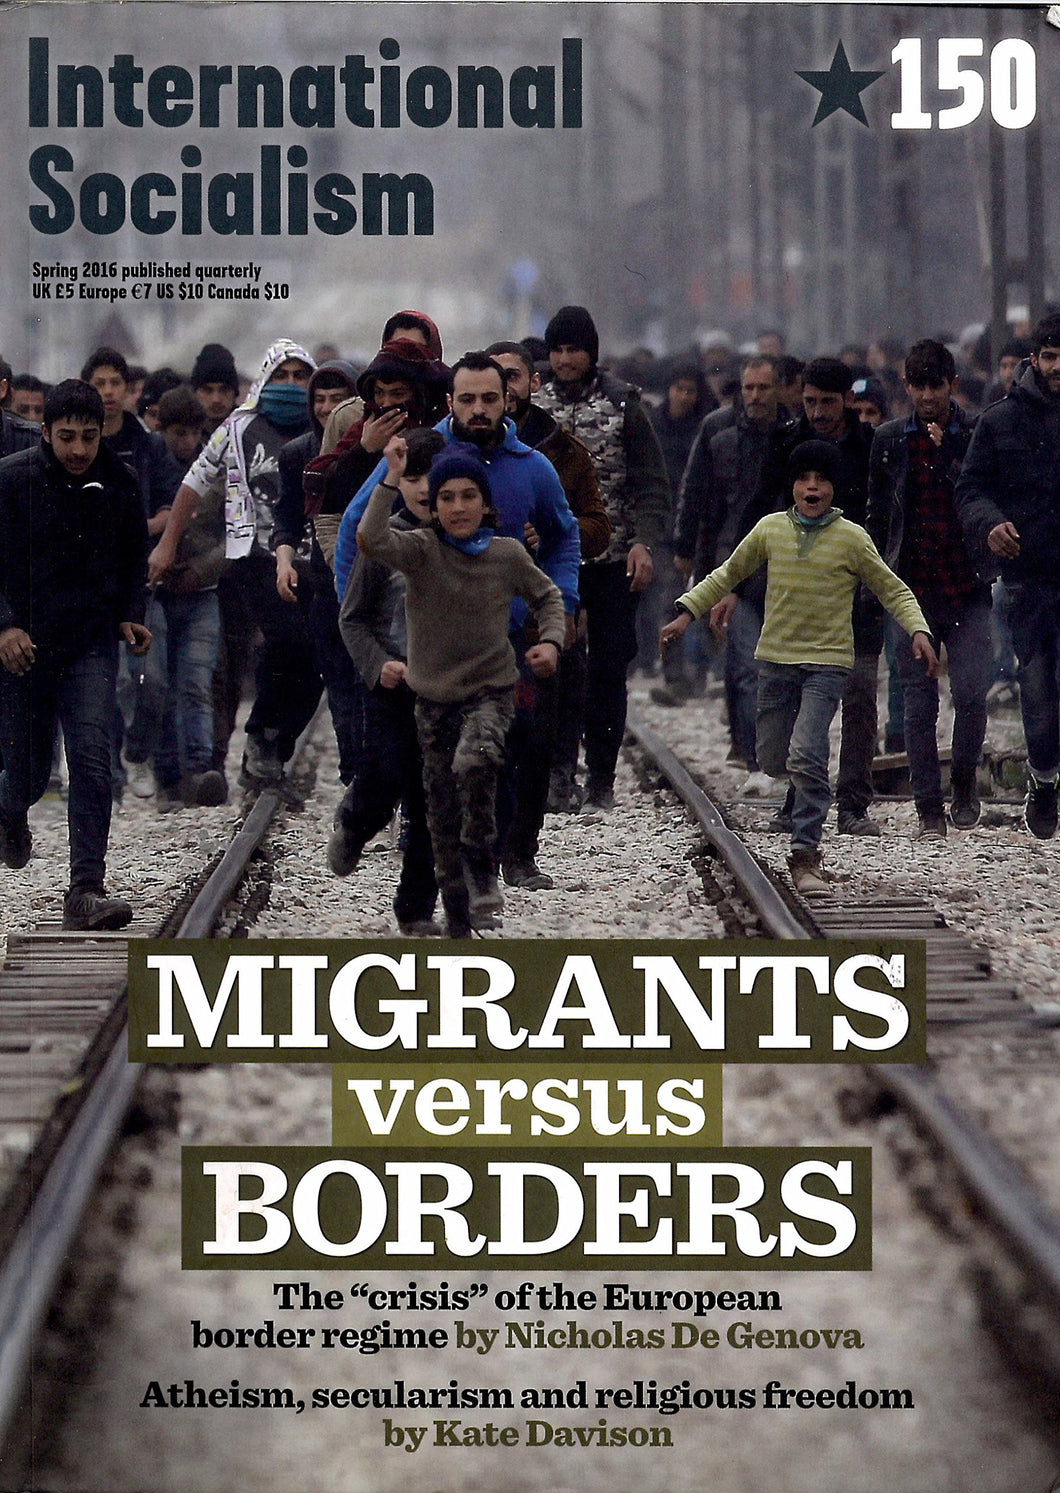 International Socialism 150: Spring 2016 - Migrants Versus Borders